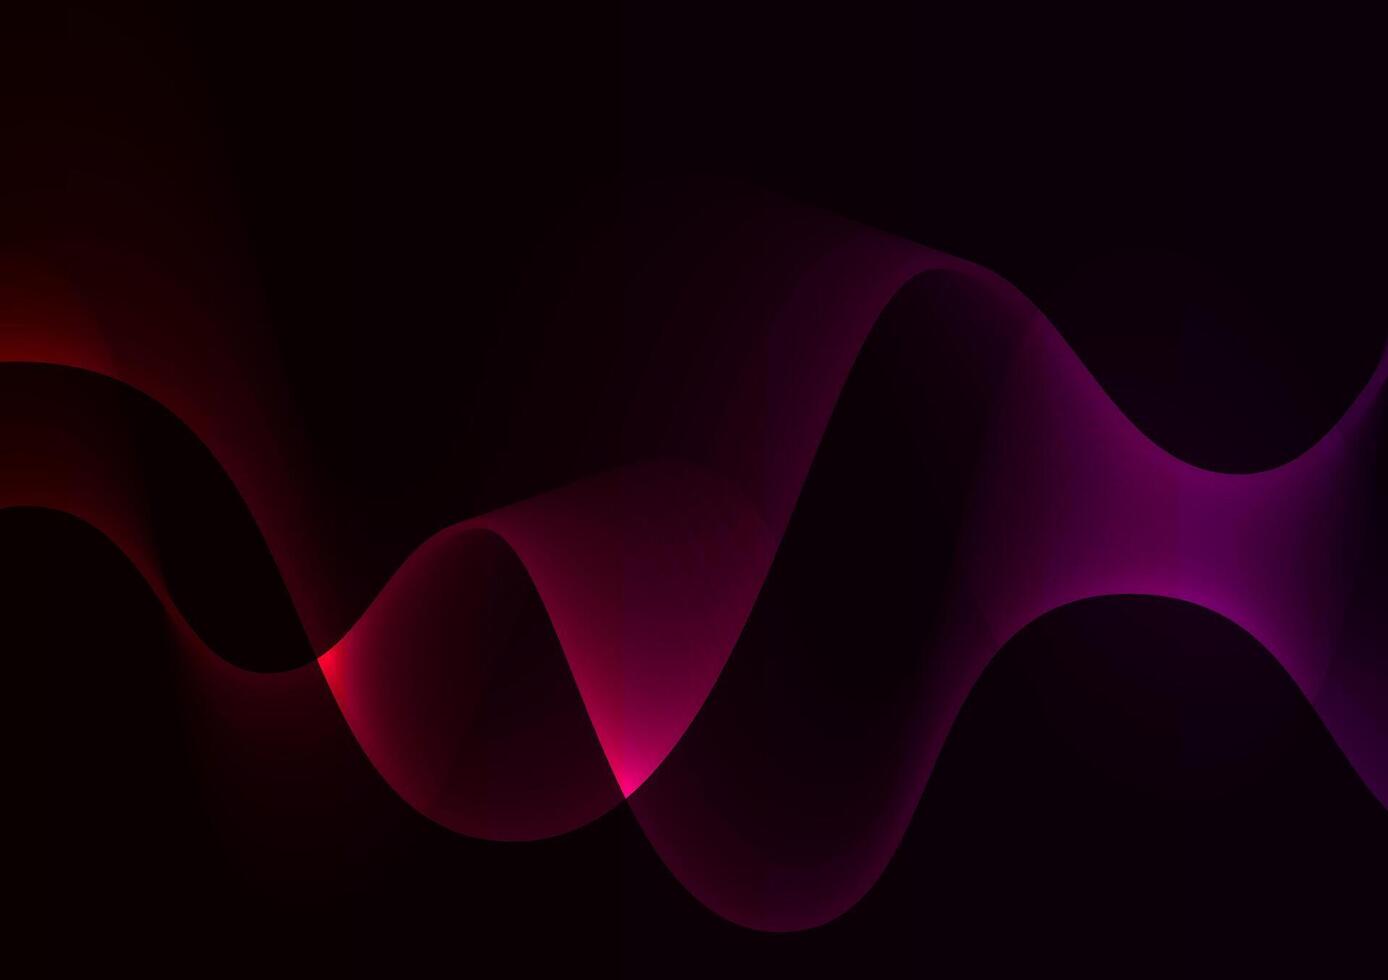 Dark wave red modern style premium presentation background vector